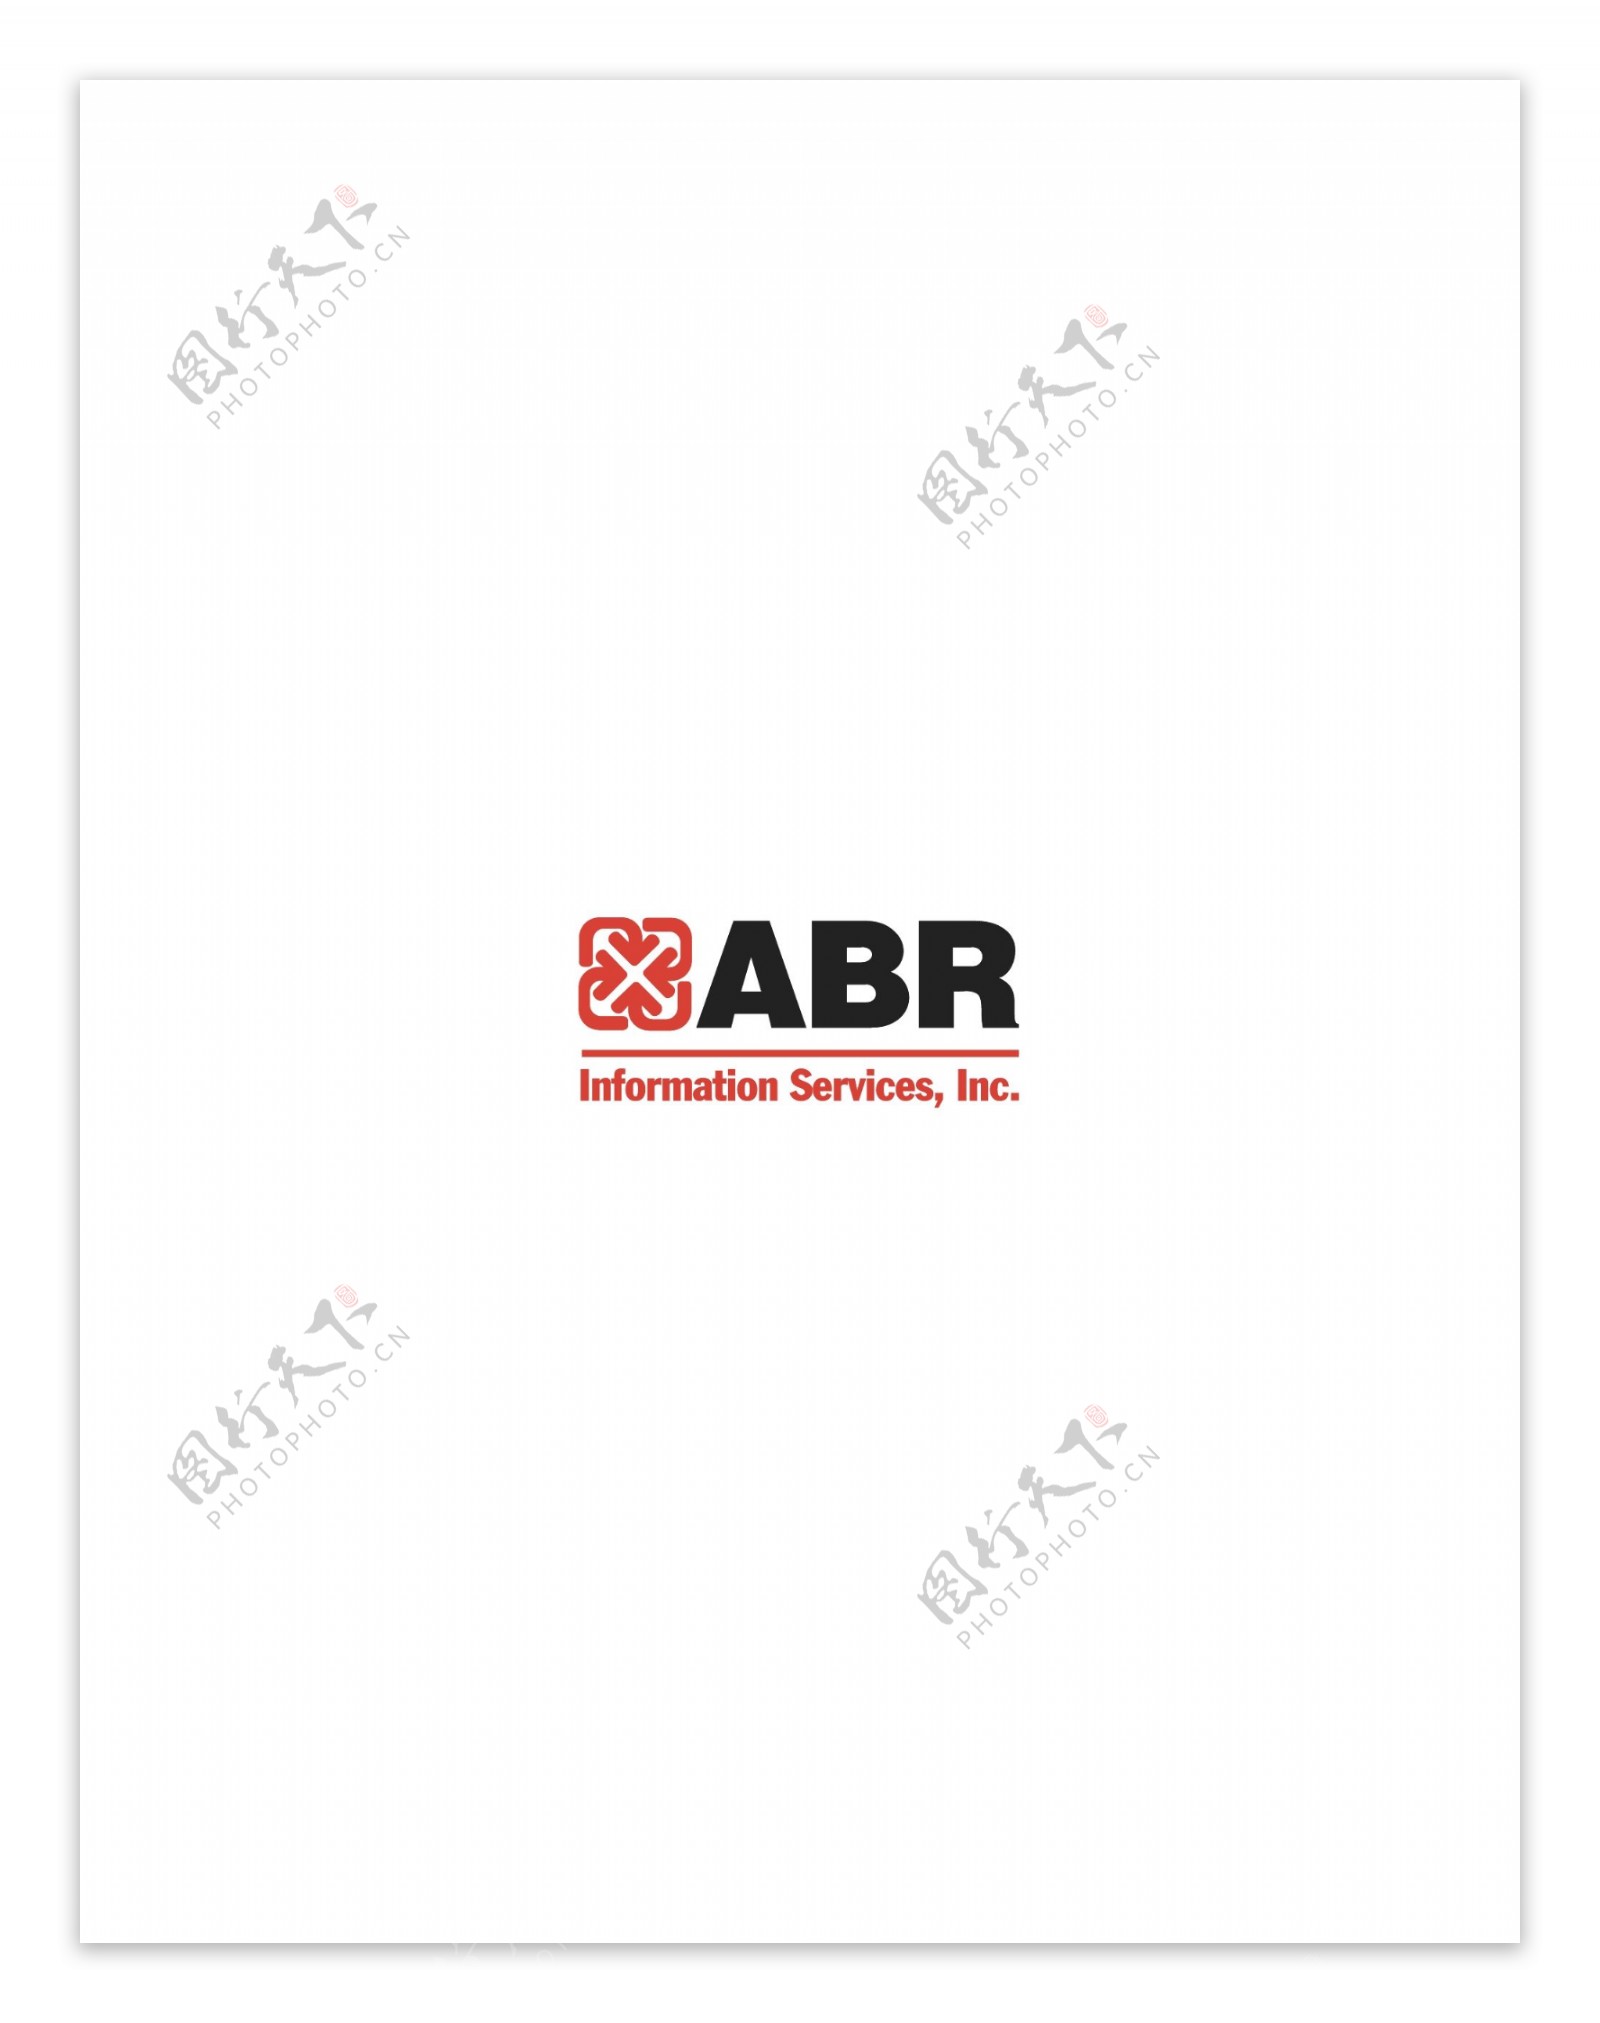 ABRInformationServiceslogo设计欣赏IT高科技公司标志ABRInformationServices下载标志设计欣赏